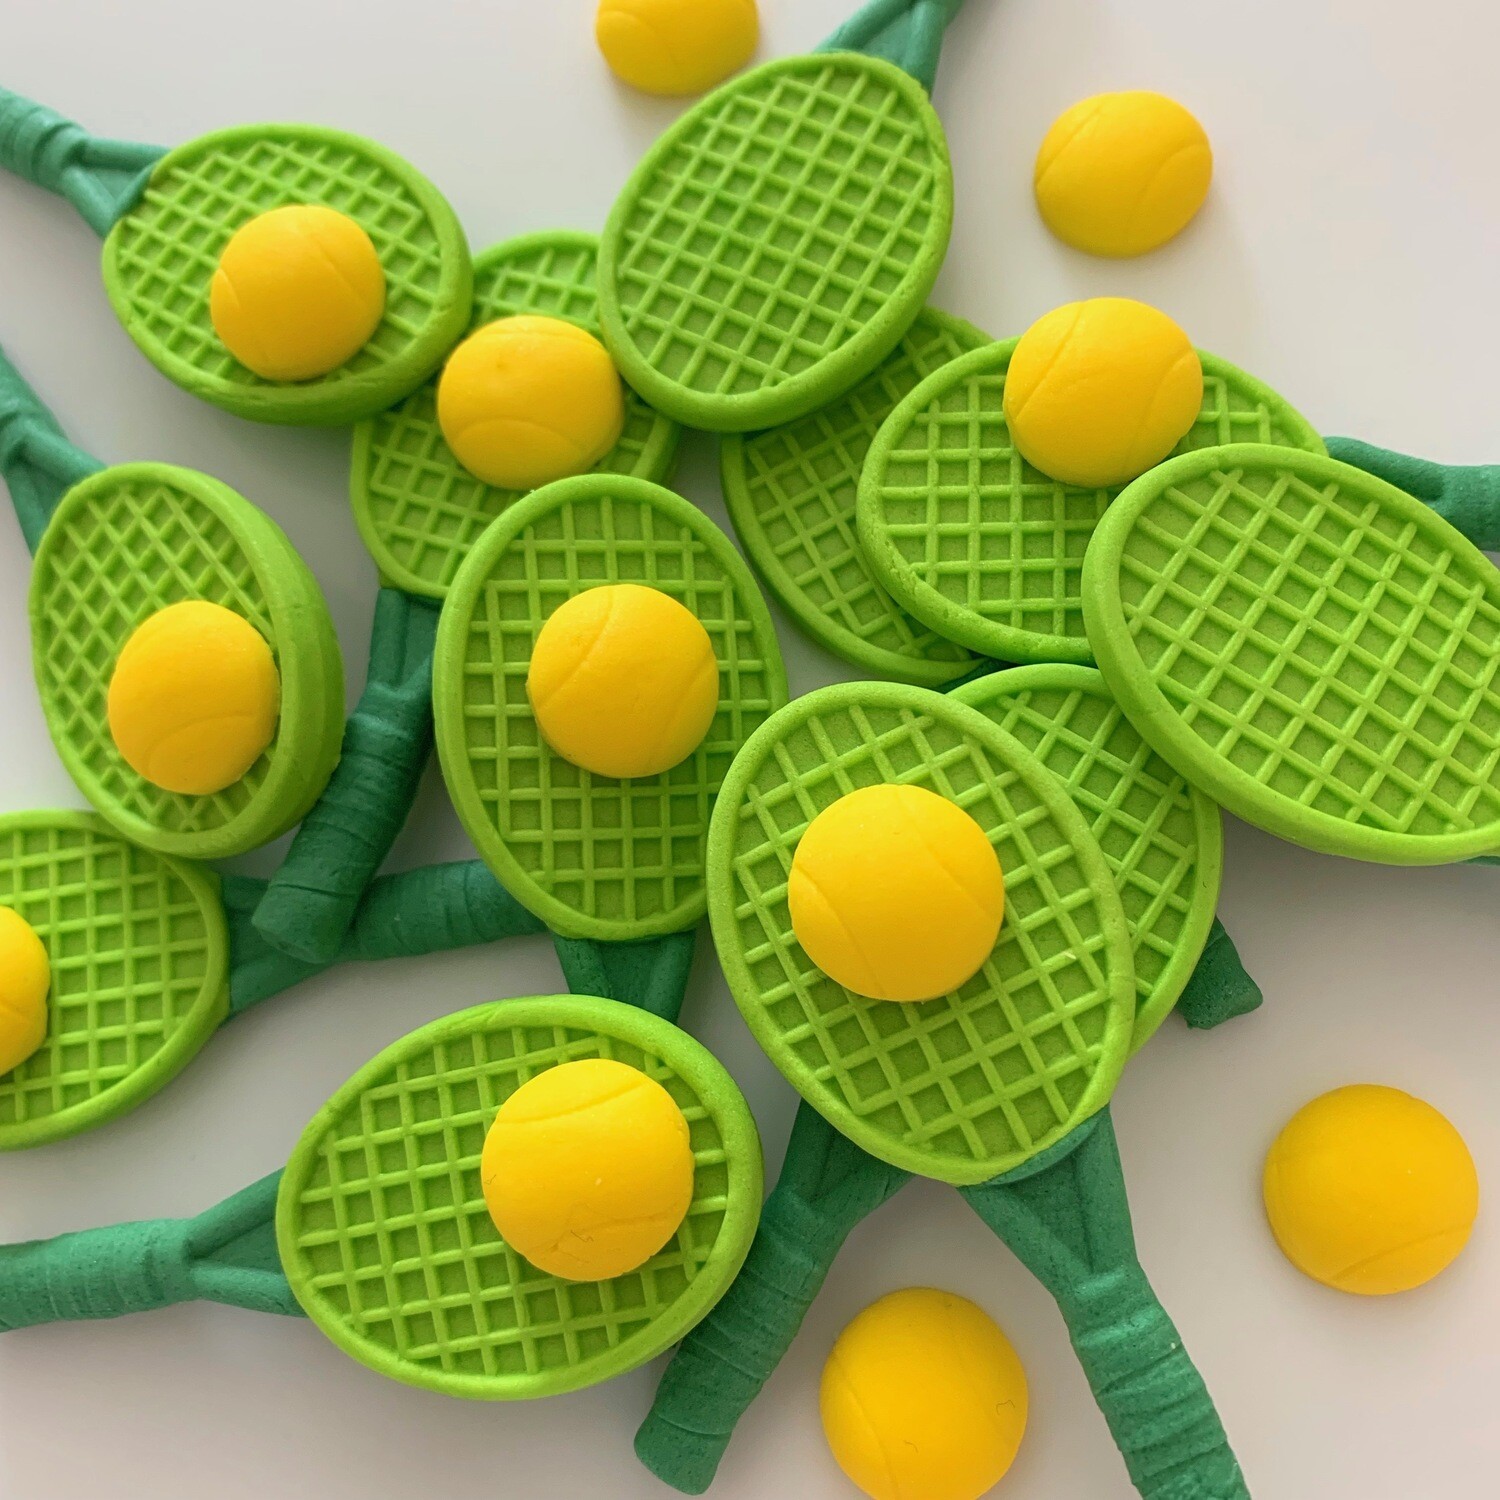 Green Tennis Rackets